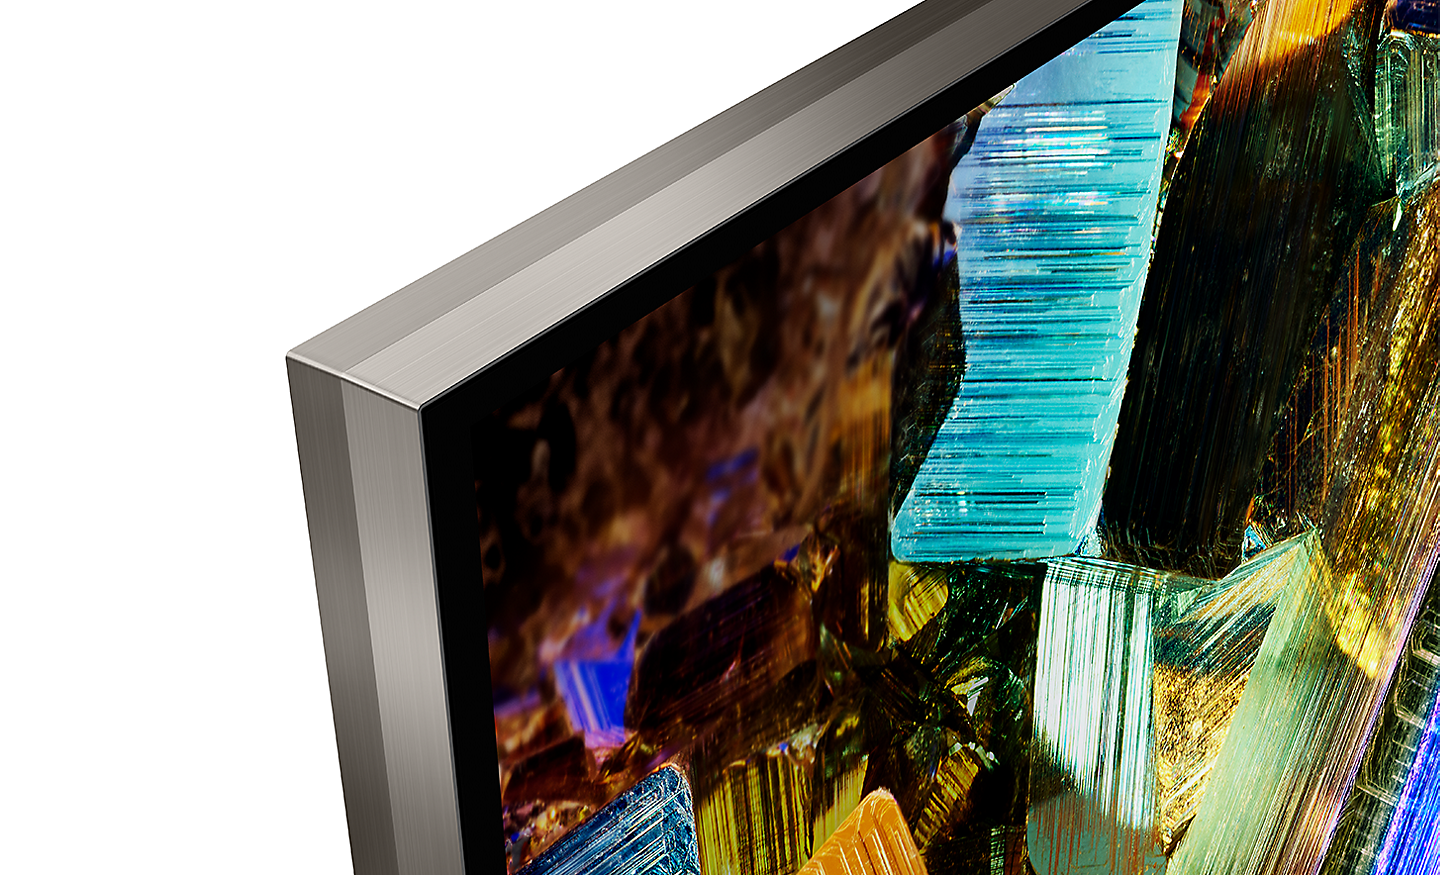 Détail d’un coin d’un téléviseur BRAVIA montrant le design presque sans bords et une capture d’écran de boîtes en aluminium colorées